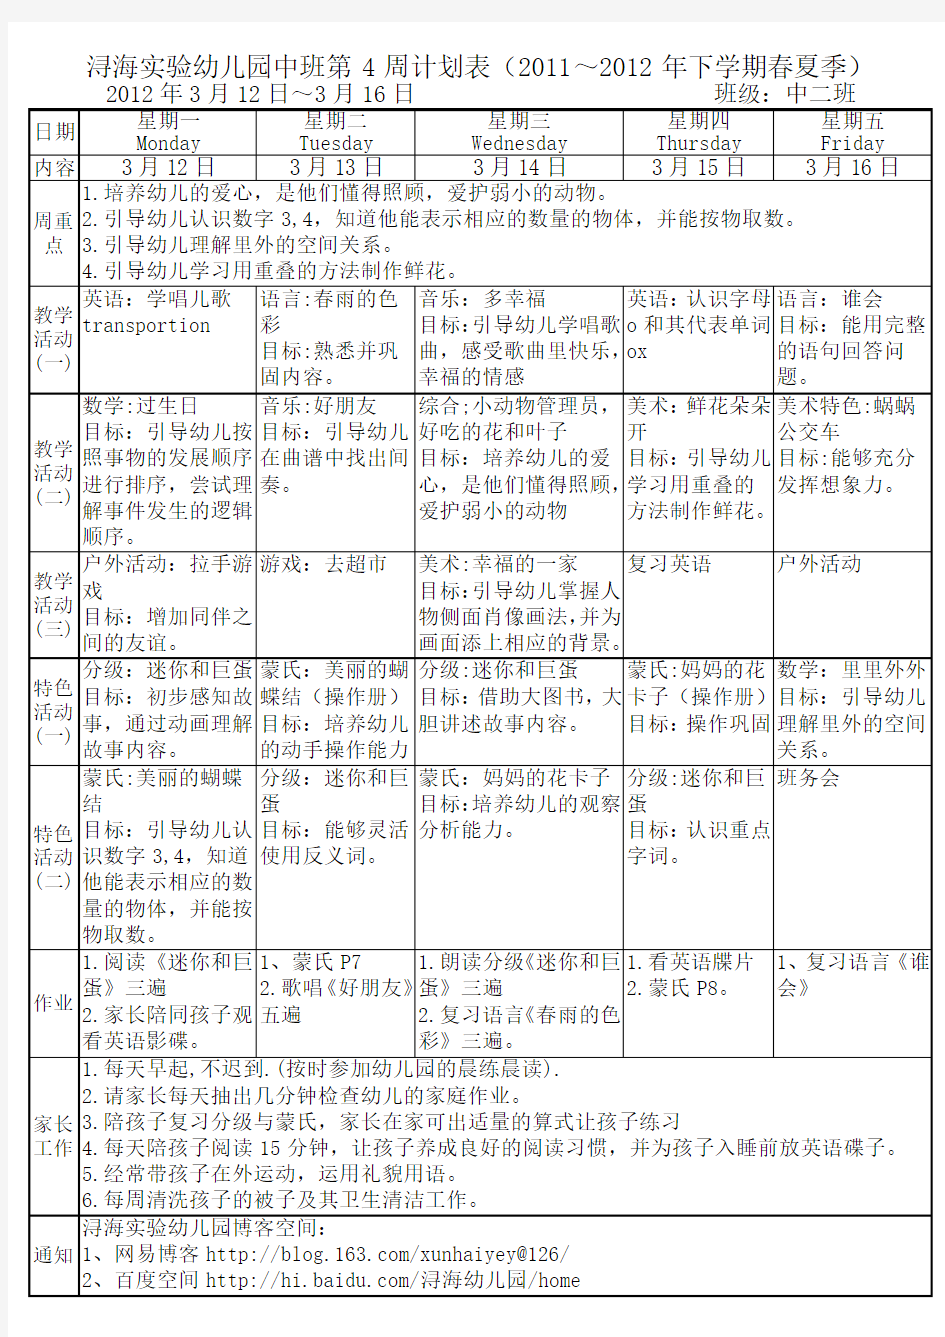 浔海实验幼儿园中二班第4周计划表(2011～2012年下学期春夏季)2012年3月12日～3月16日